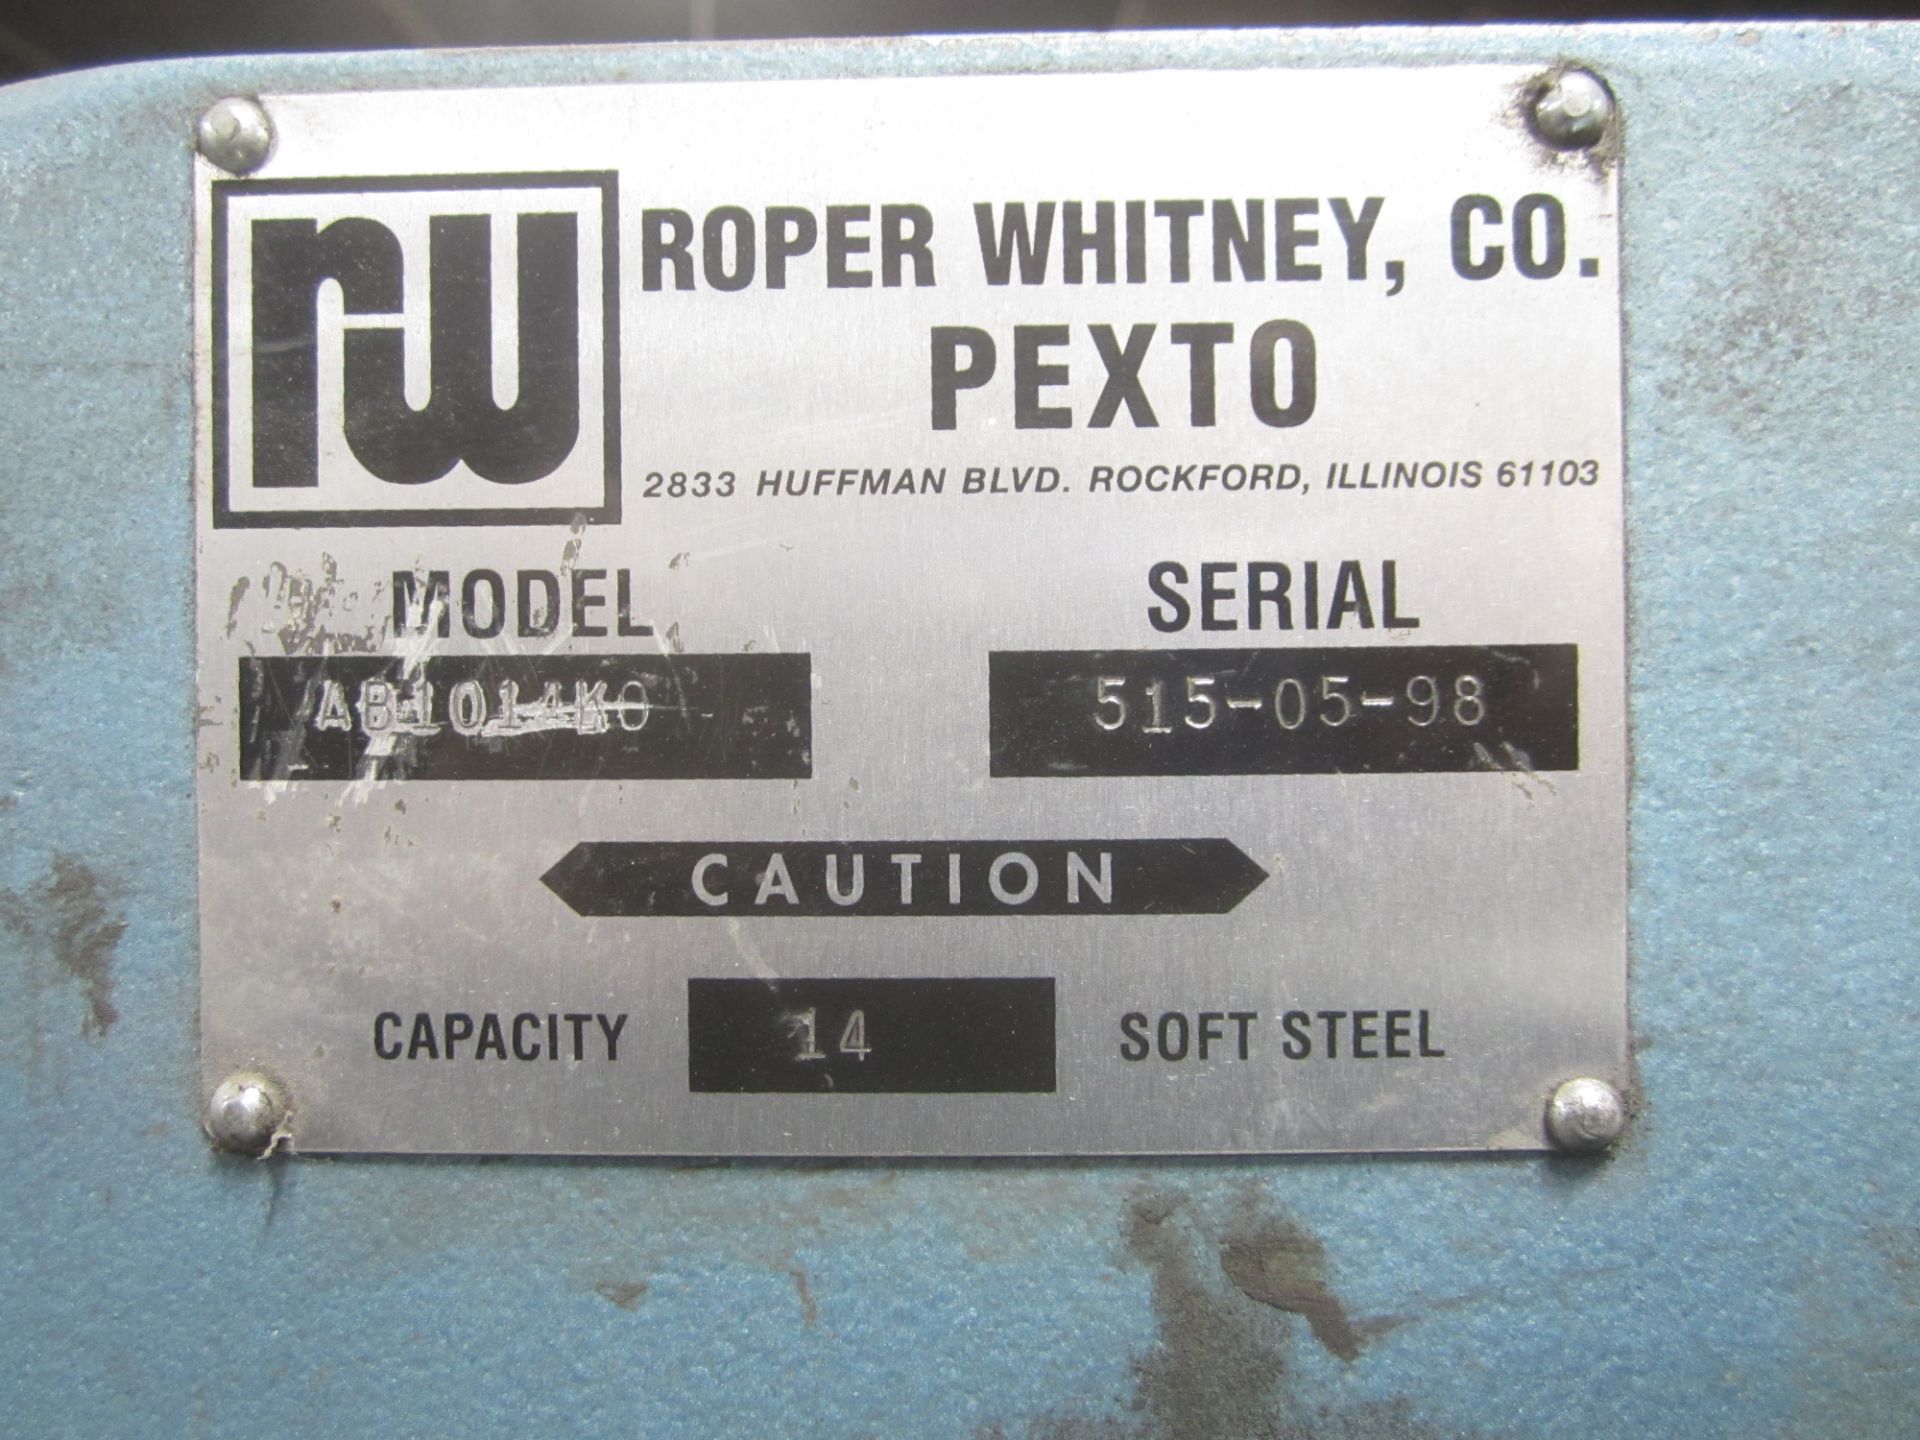 Roper Whitney Model AB101-4KO CNC Folding Machine, 515-05-98, New 1998, Orion CNC Control, 122” - Image 8 of 13